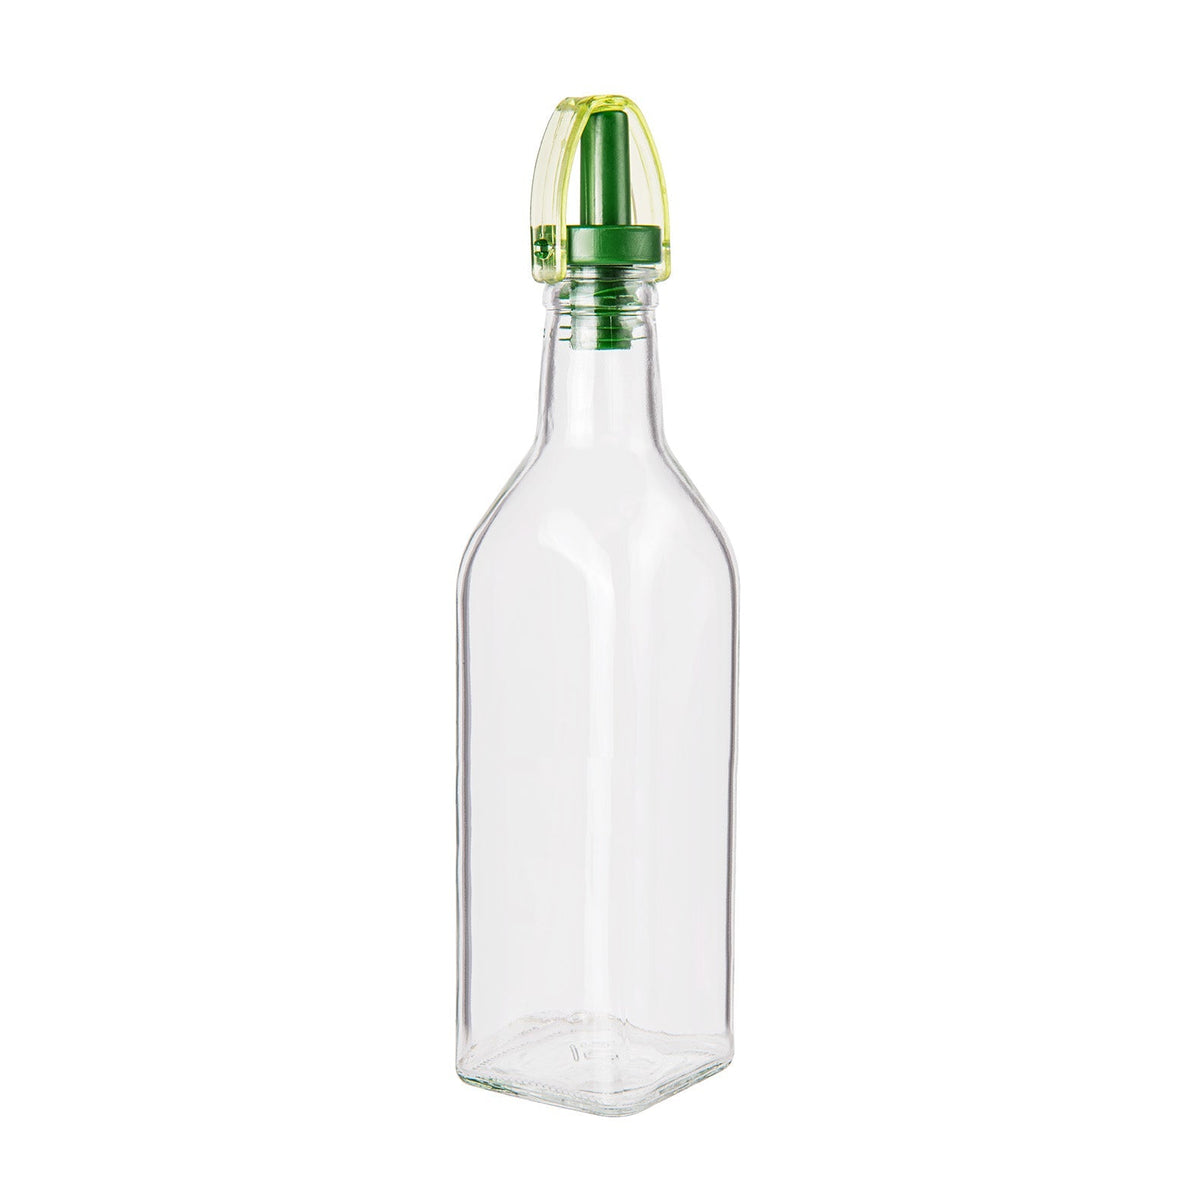 Glasflasche mit Spender für Öl oder Essig – 250 ml